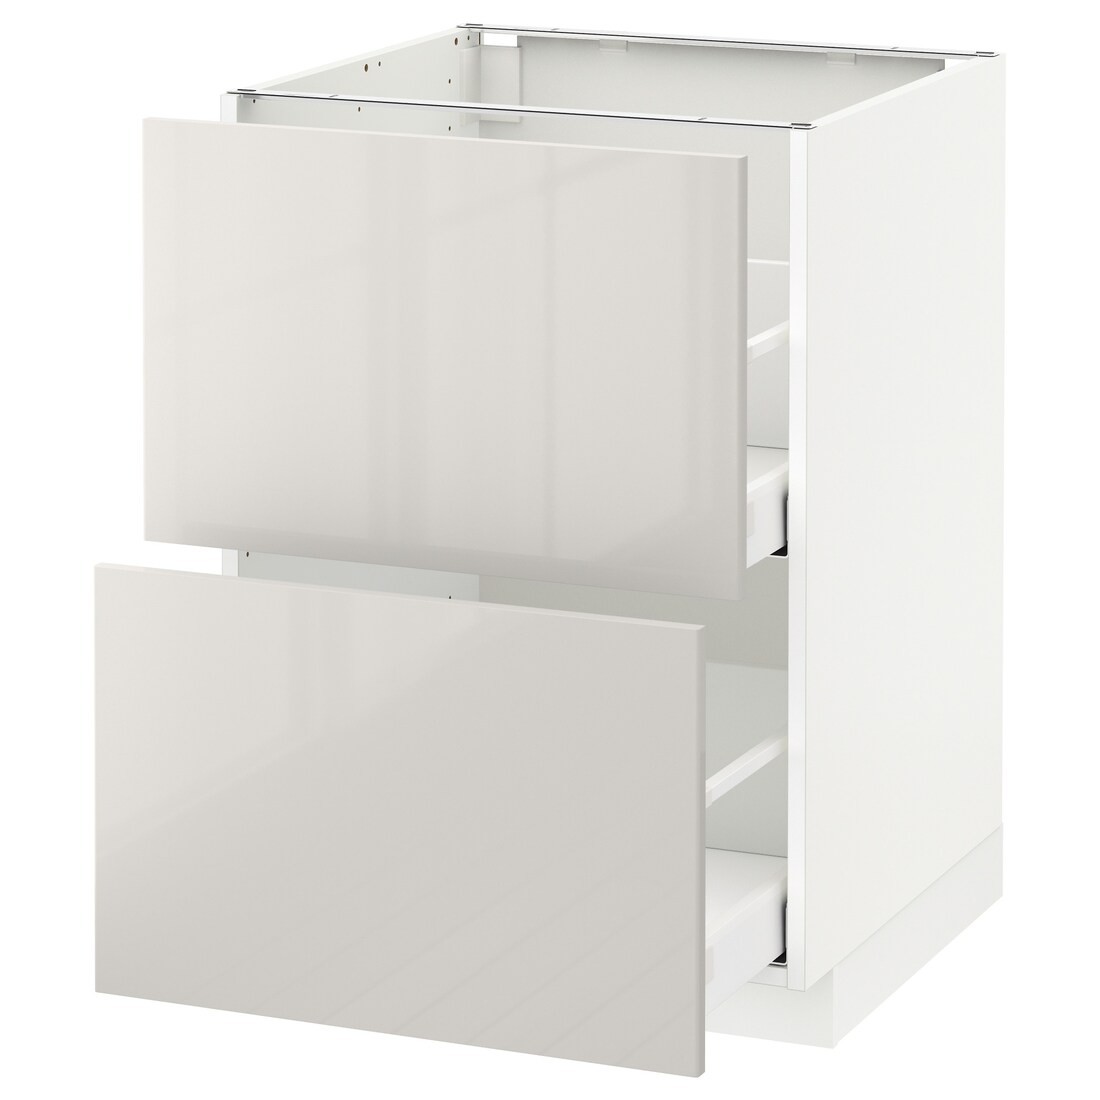 IKEA METOD МЕТОД / MAXIMERA МАКСИМЕРА Напольный шкаф с ящиками, белый / Ringhult светло-серый, 60x60 см 99141794 991.417.94